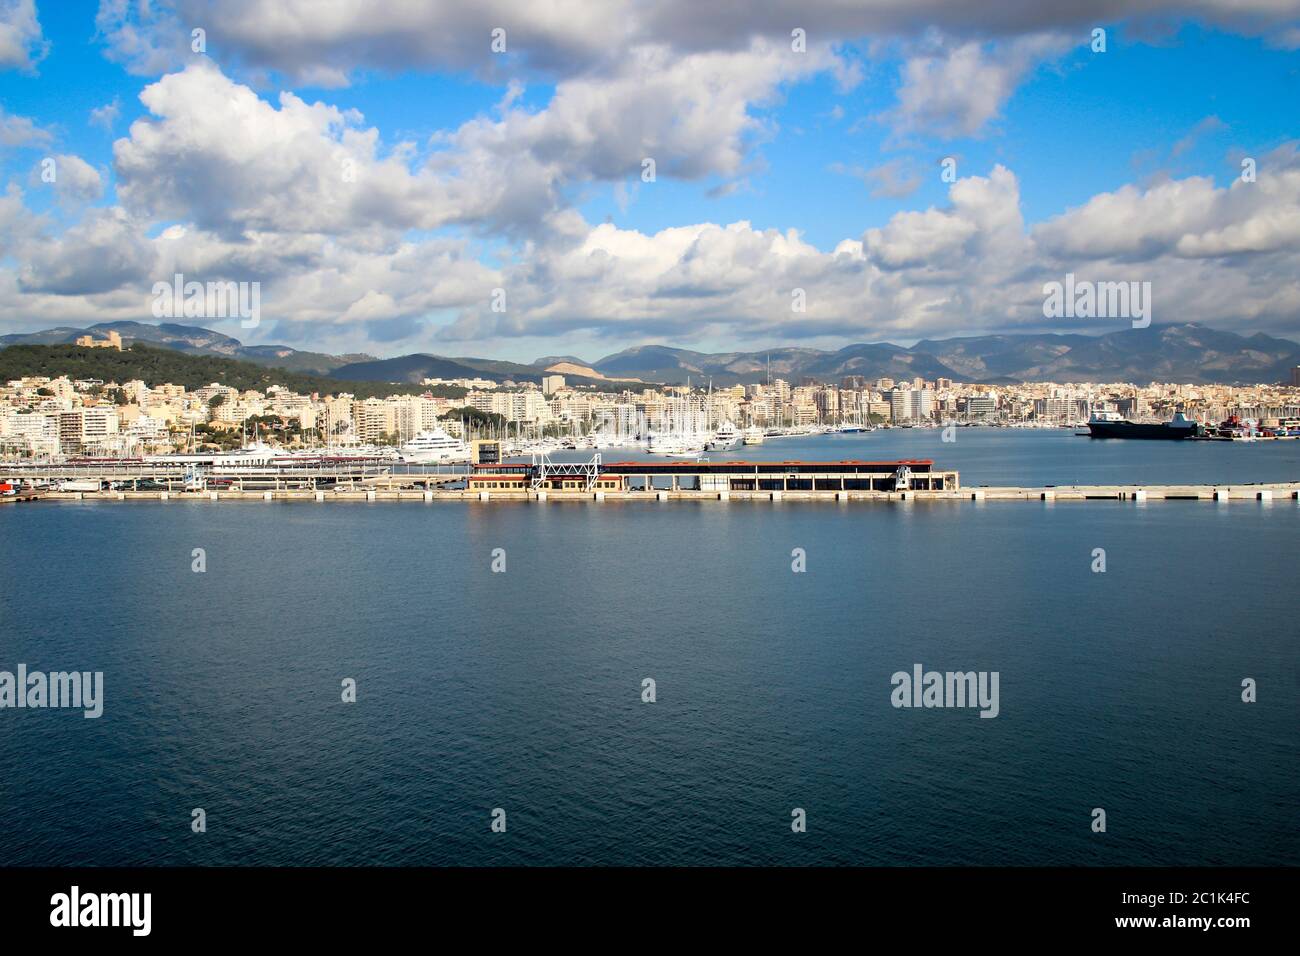 Harbor views of Palma de Mallorca Stock Photo